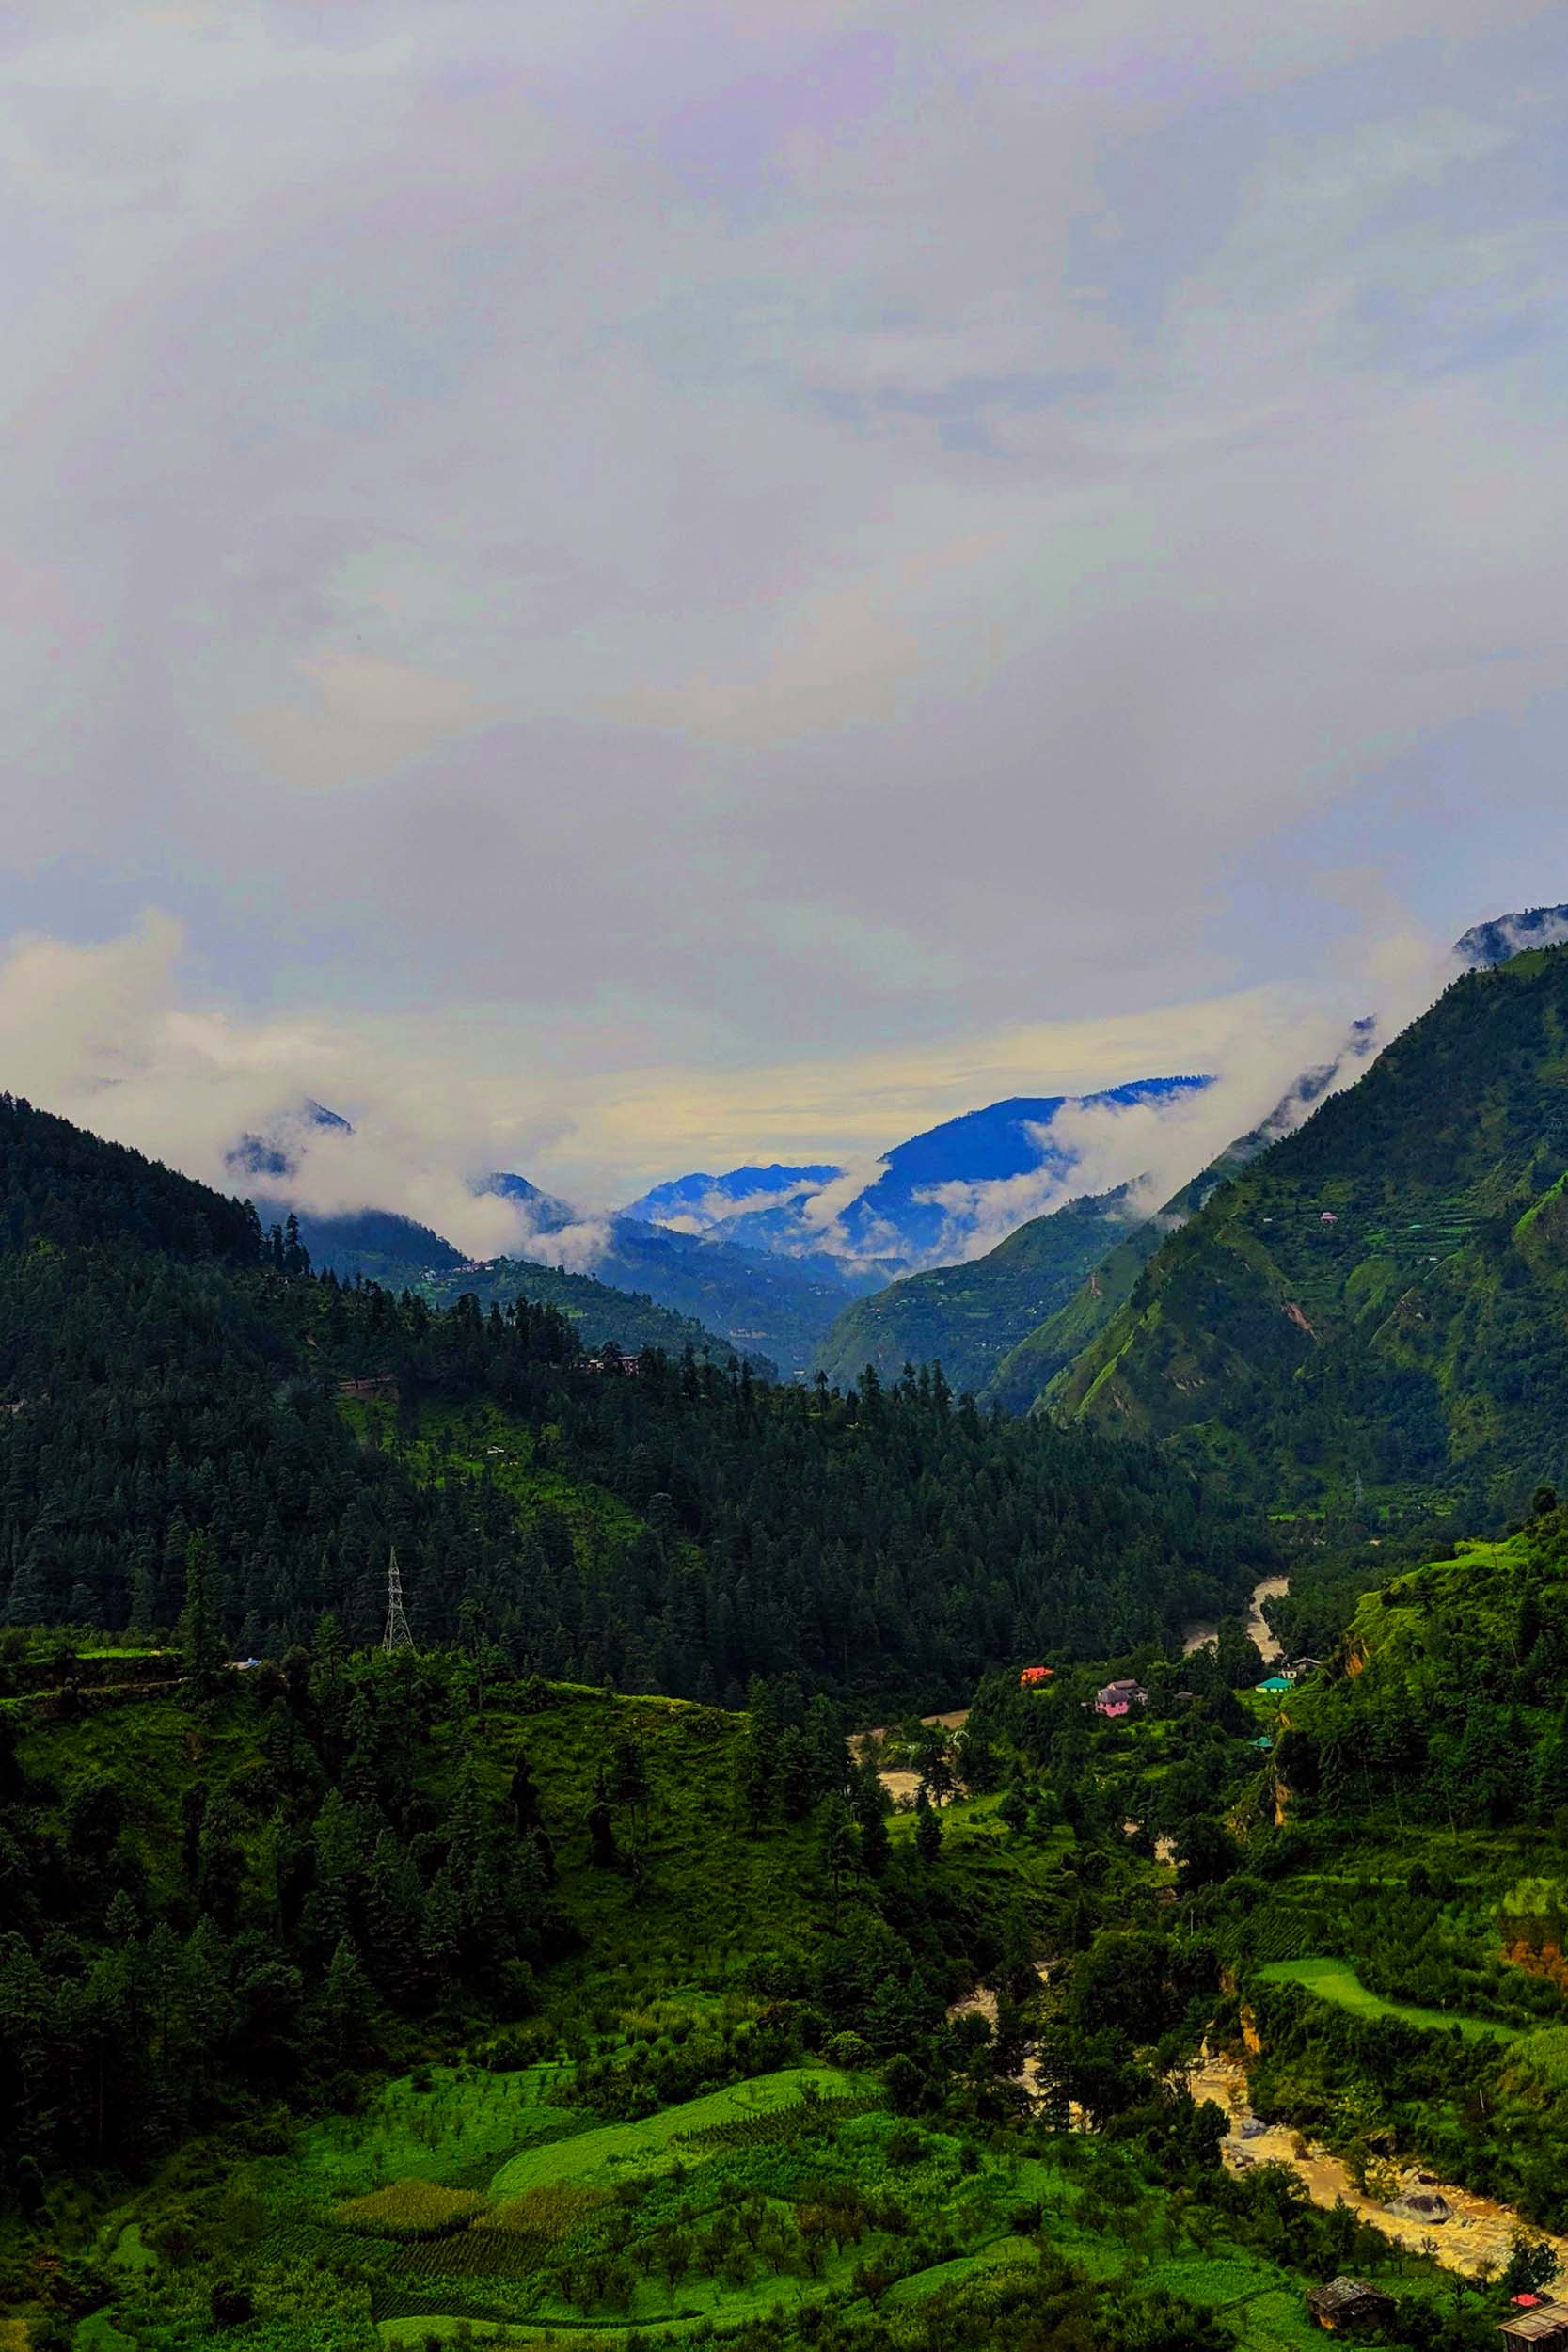 From Chanderkhani Pass to Malana Trekking